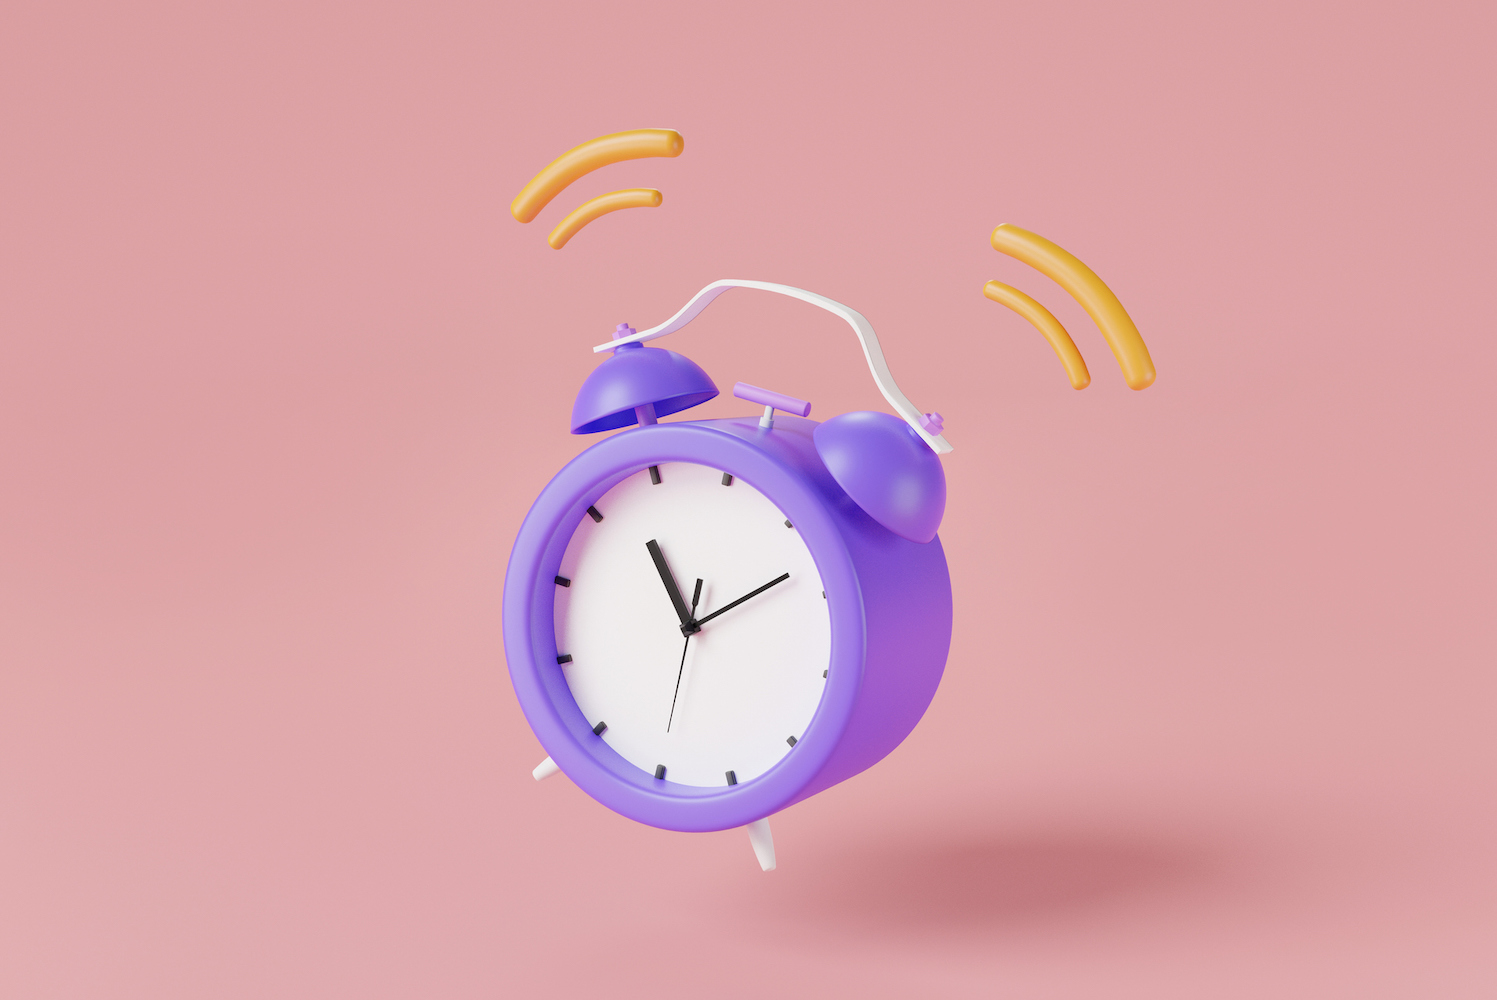 Dering jam alarm ungu dengan latar belakang merah muda.  Untuk uji tuntas menyeluruh, minimalkan interupsi untuk keberhasilan maksimum.